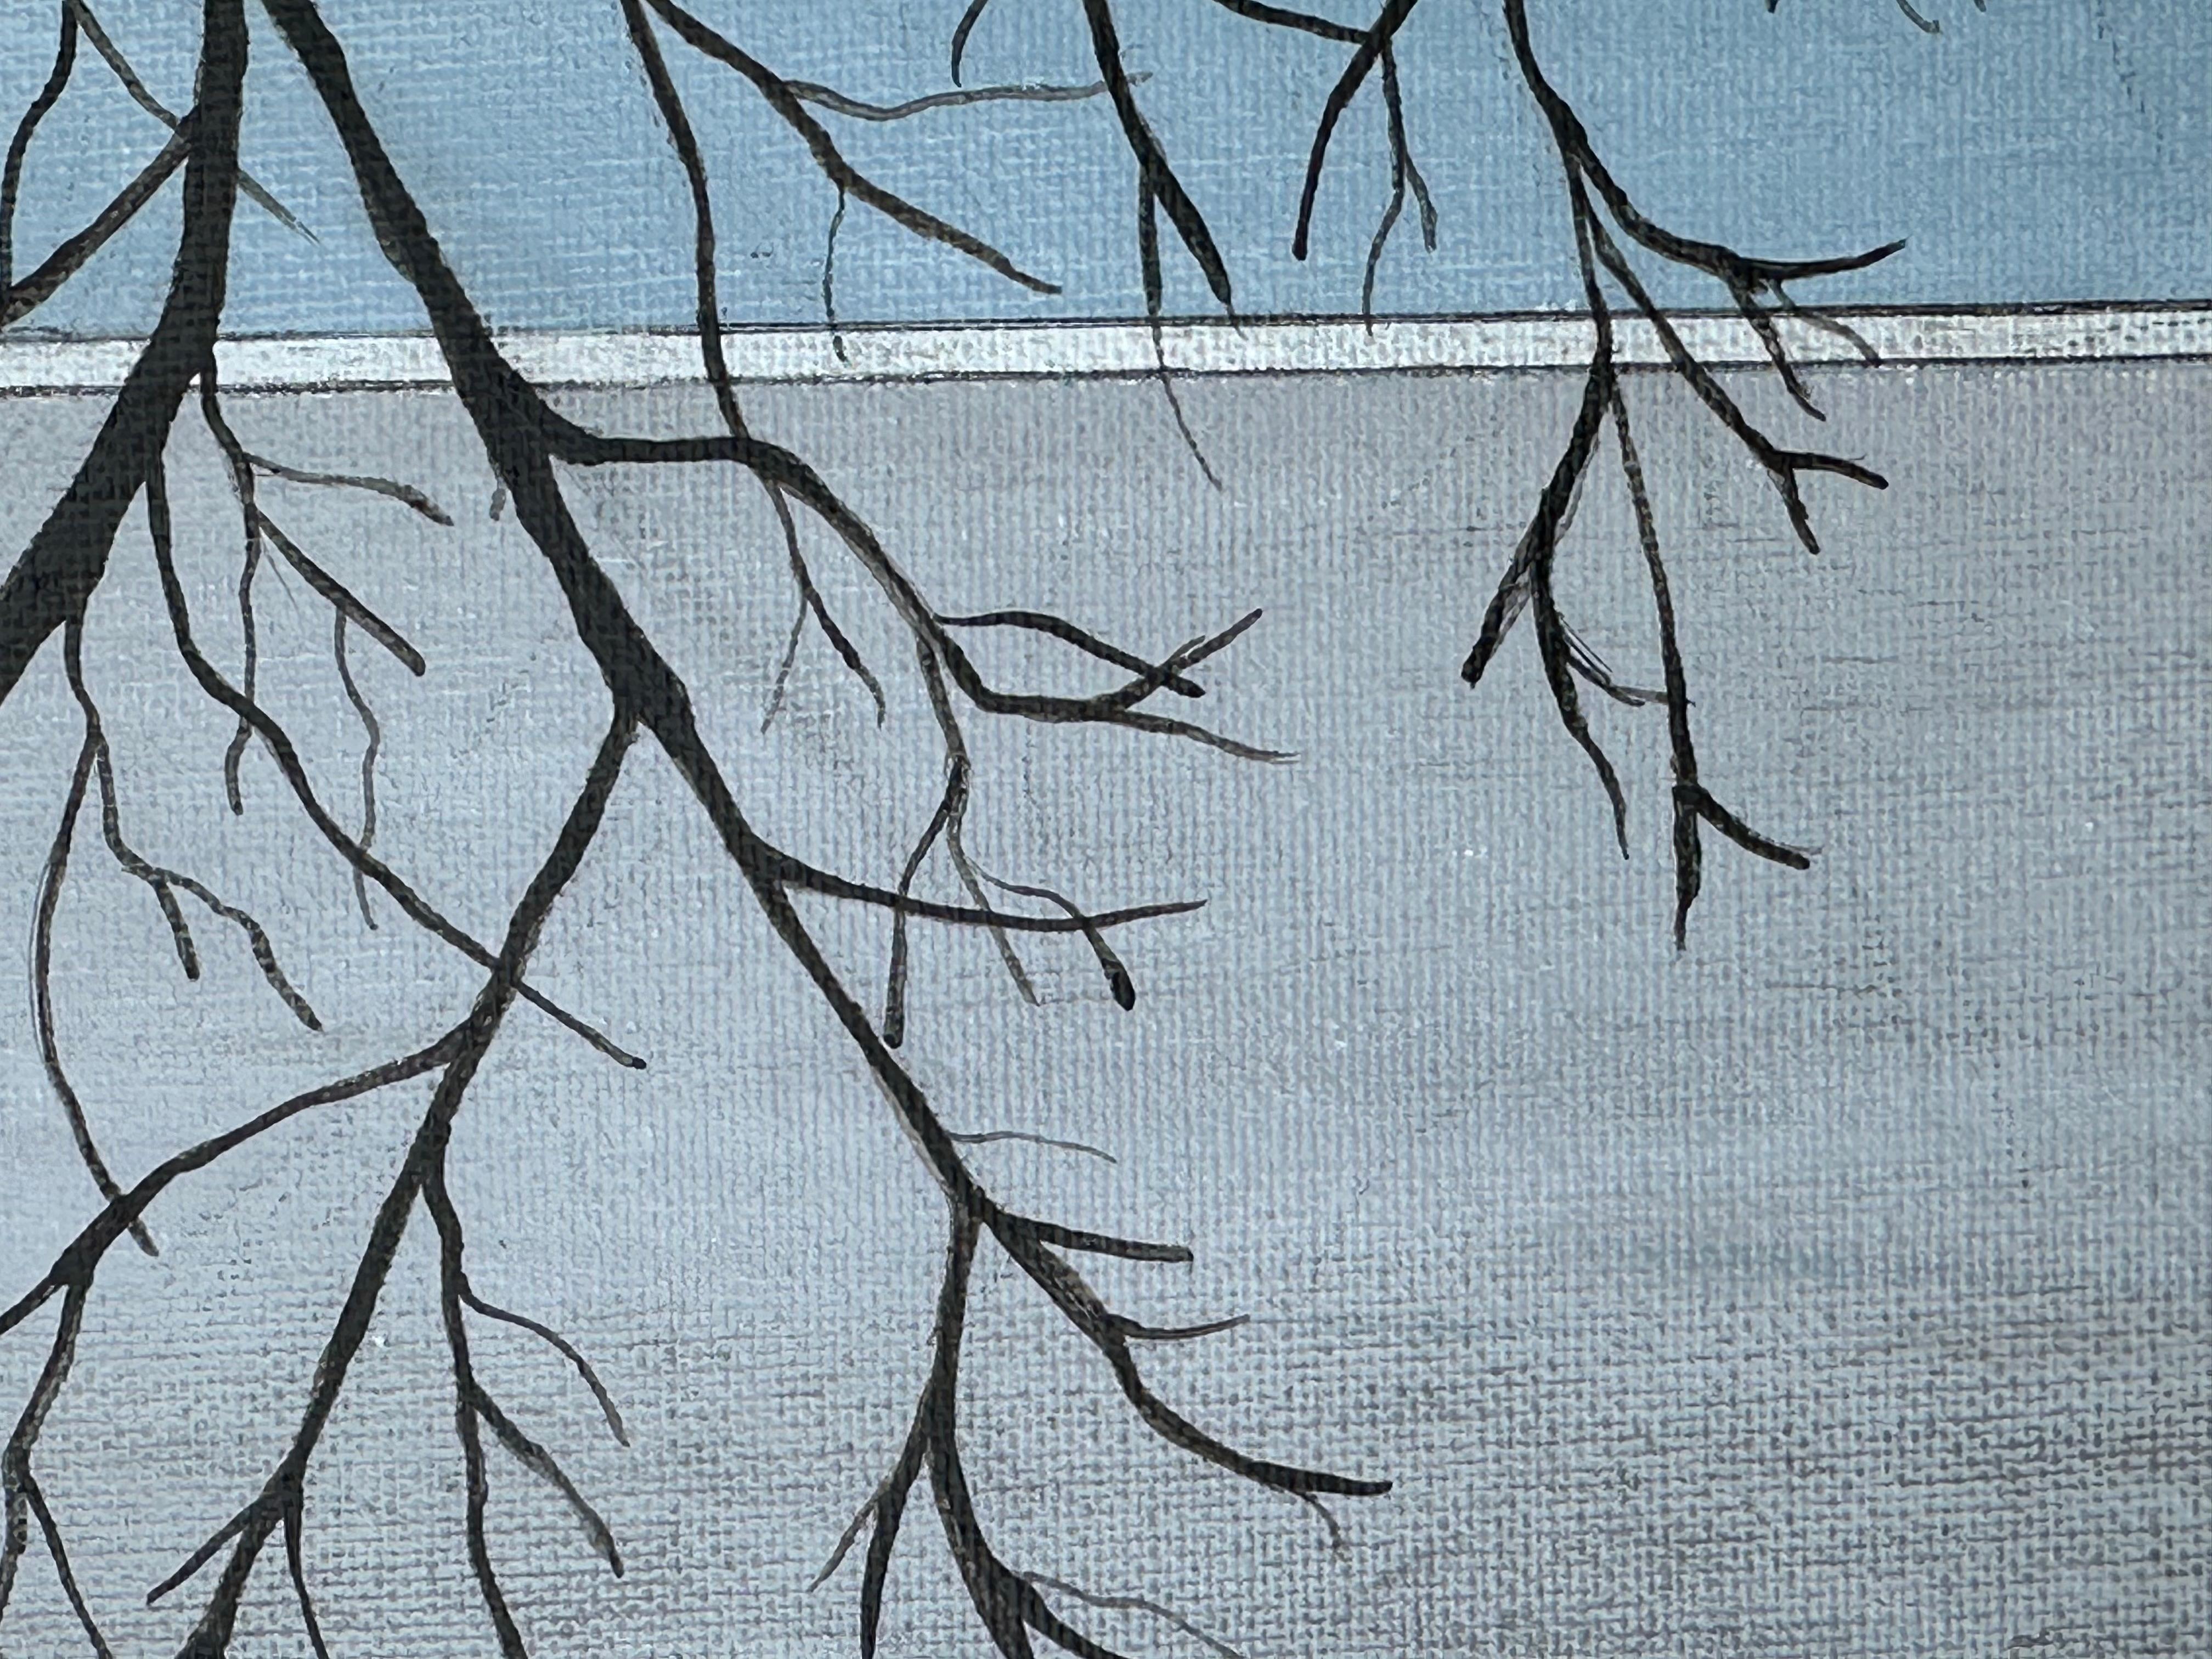 <p>Kommentare des Künstlers<br>Ein einsamer, kahler Baum steht in einem Außenbereich, der von einem graublauen Gebäude begrenzt wird. Die Silhouette der verschlungenen Äste trägt die dunkelsten Farbtöne des Gemäldes und schafft durch den Kontrast